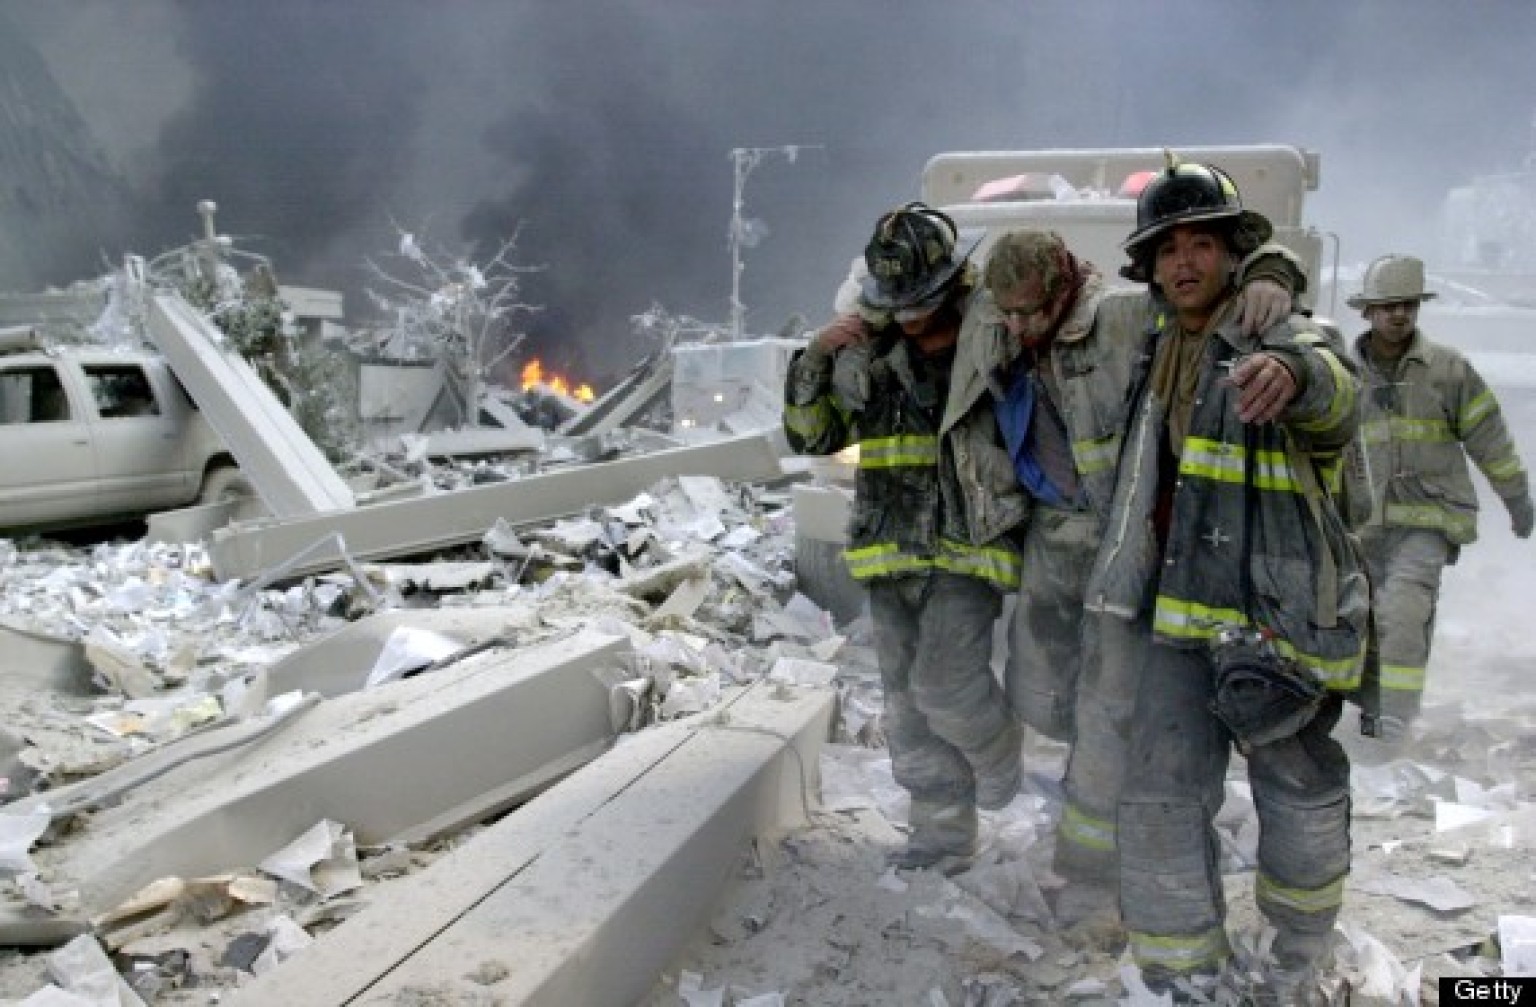 Resultado de imagen para people helping 9/11